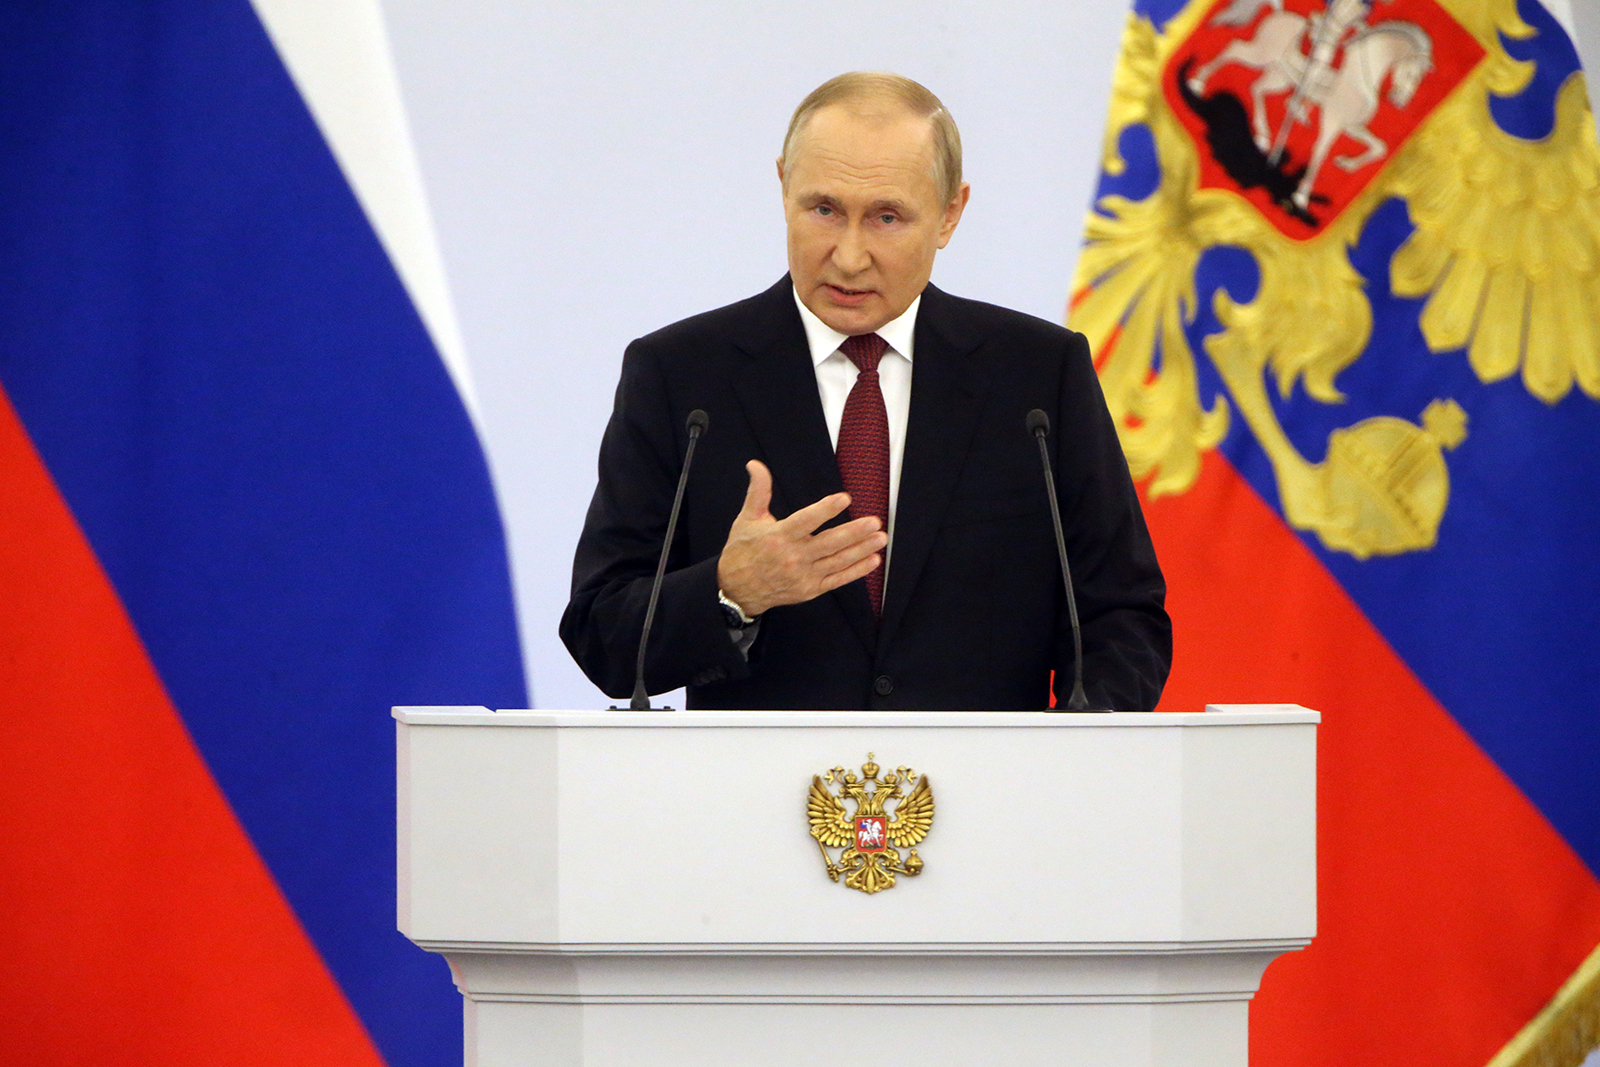 Russian President Vladimir Putin speaks in Moscow on September 30.